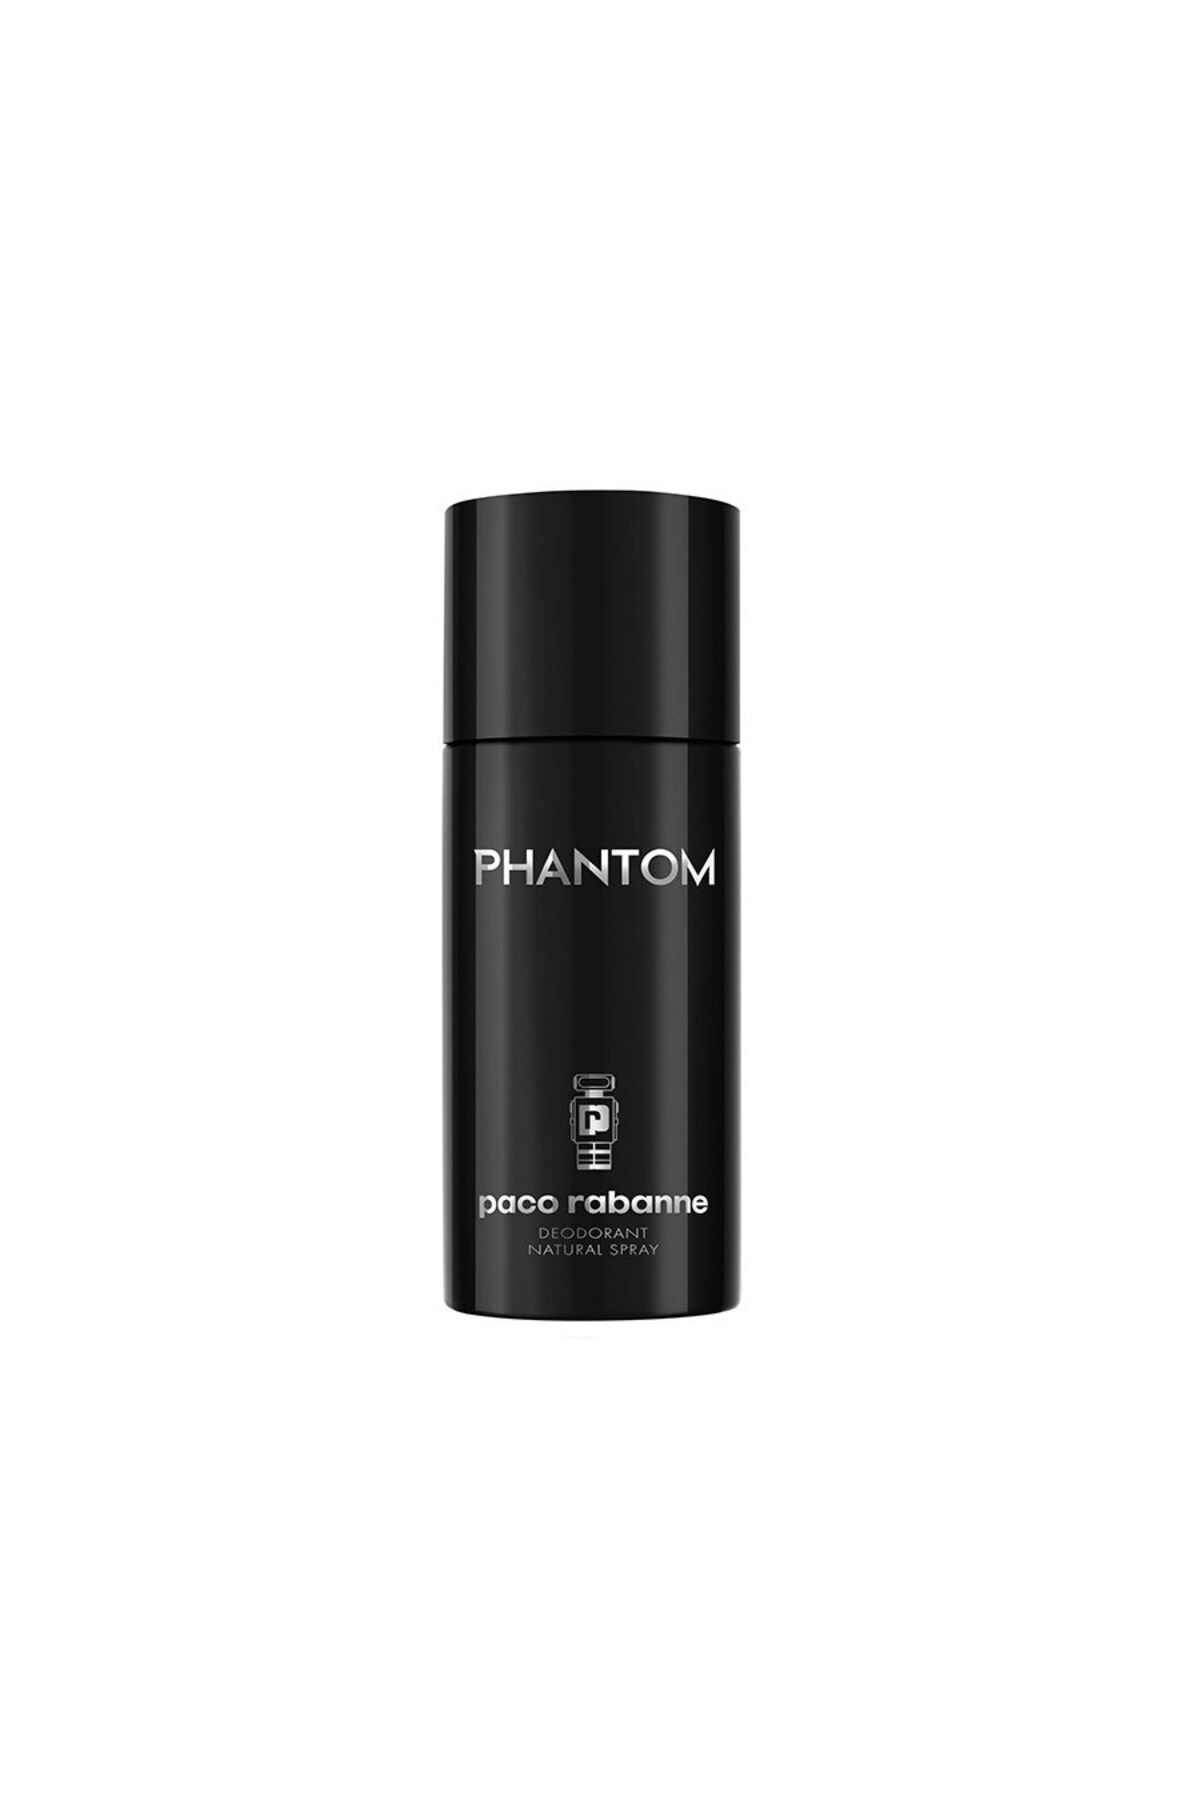 Paco Rabanne Phantom Deo Spray İyi Hissettiren Enerjilerle Beslenen Özgüven 150ml